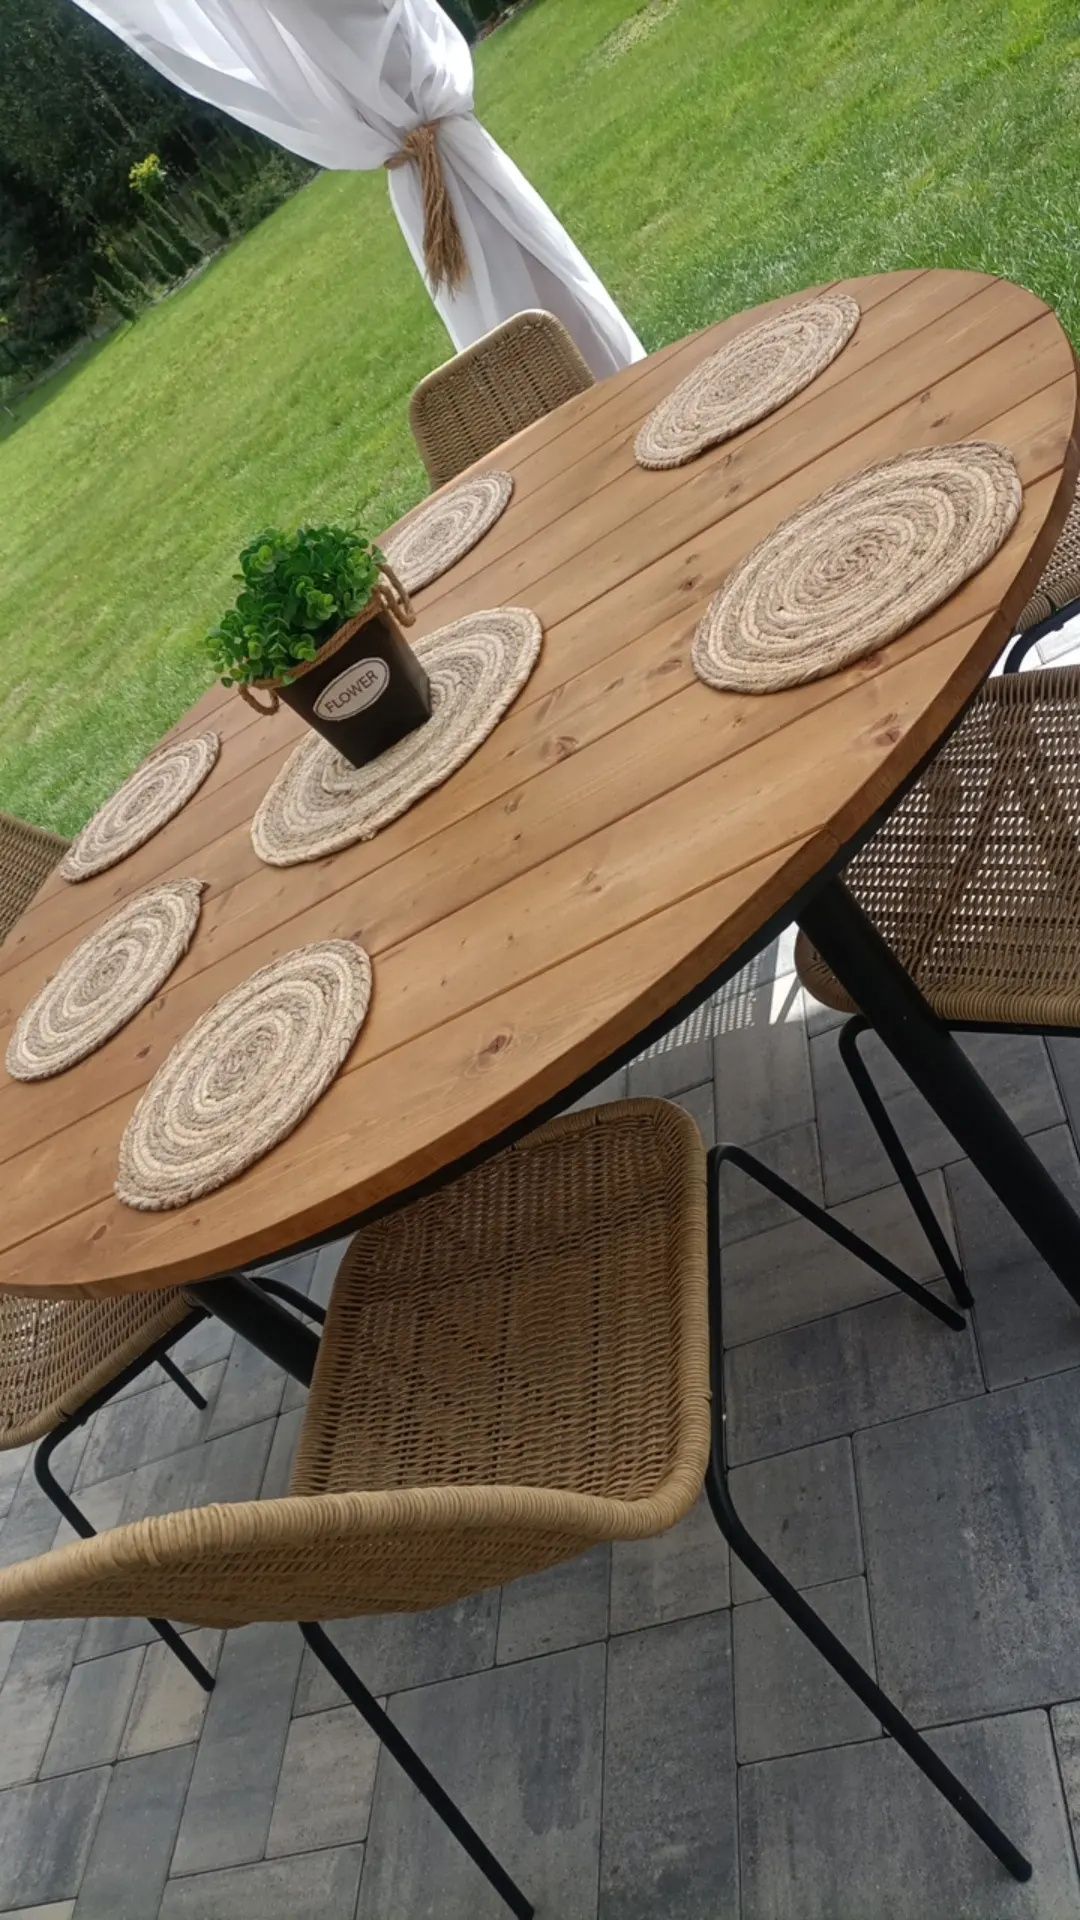 Stół okrągły taras ogród metalowy drewniany loft nowoczesny